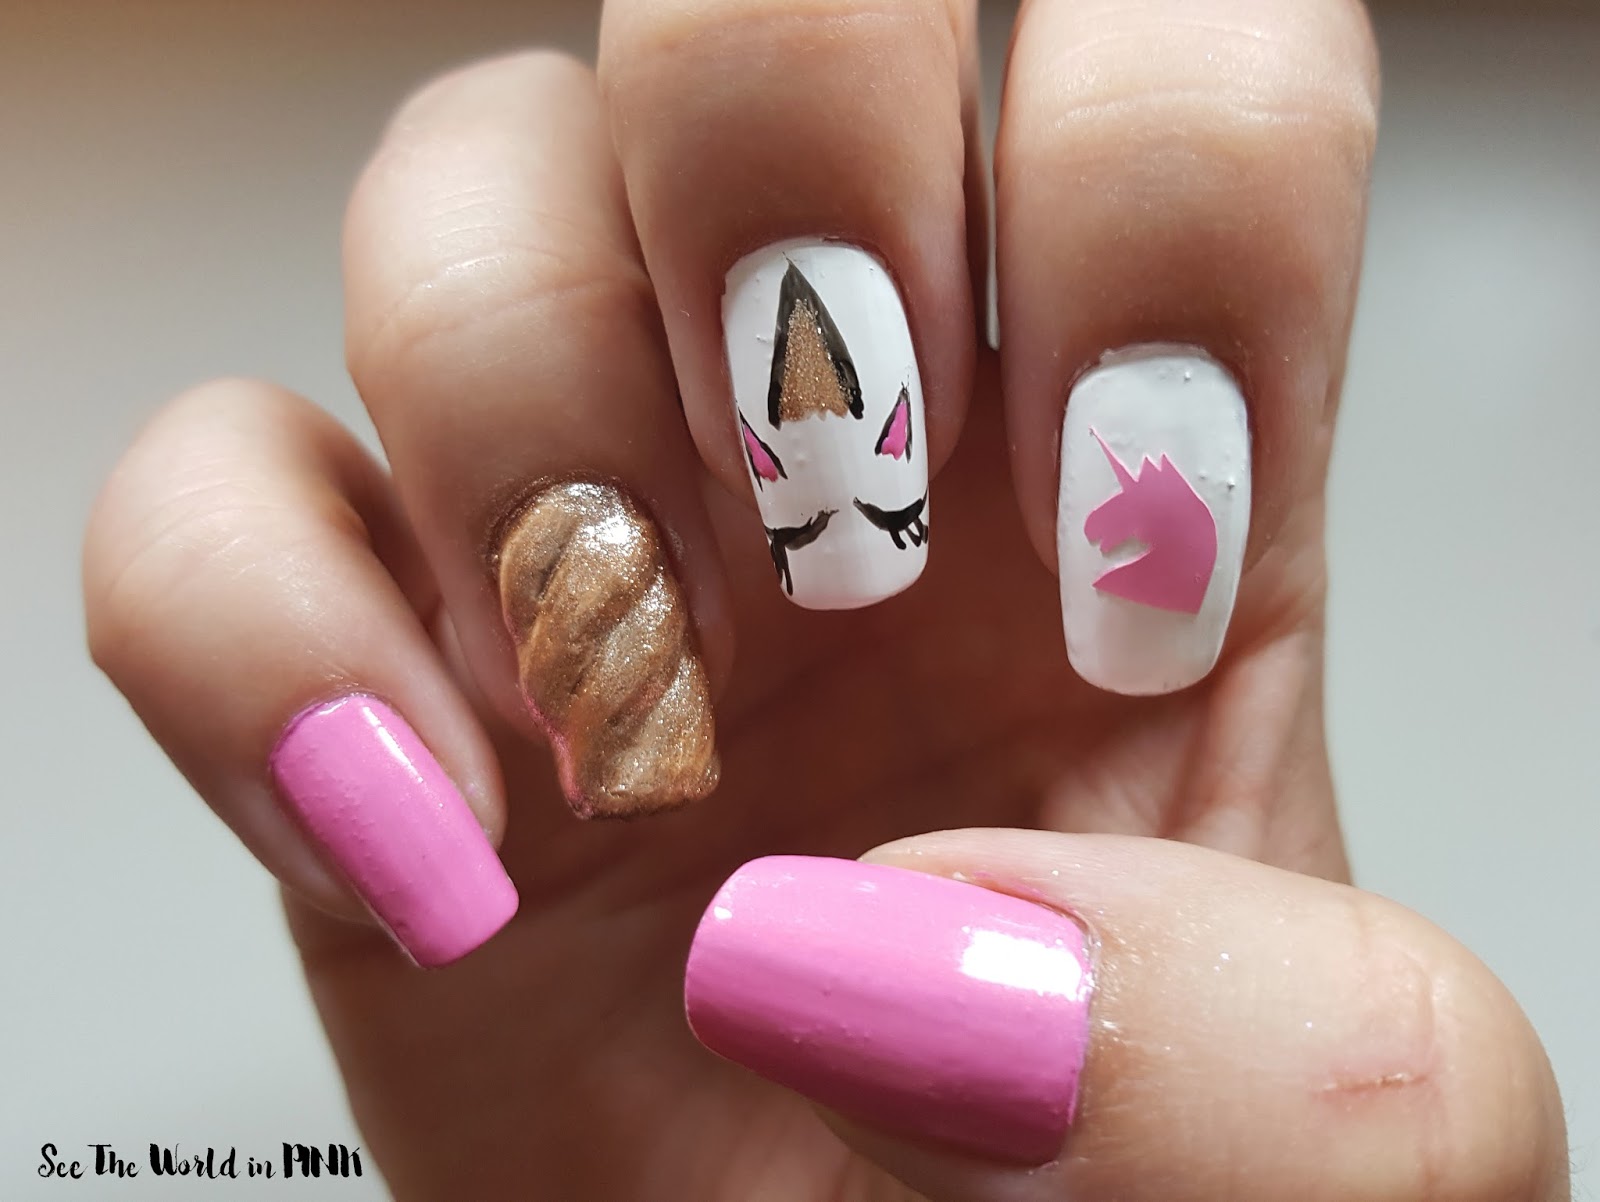 Manicure Wednesday - Unicorn Nail Art!